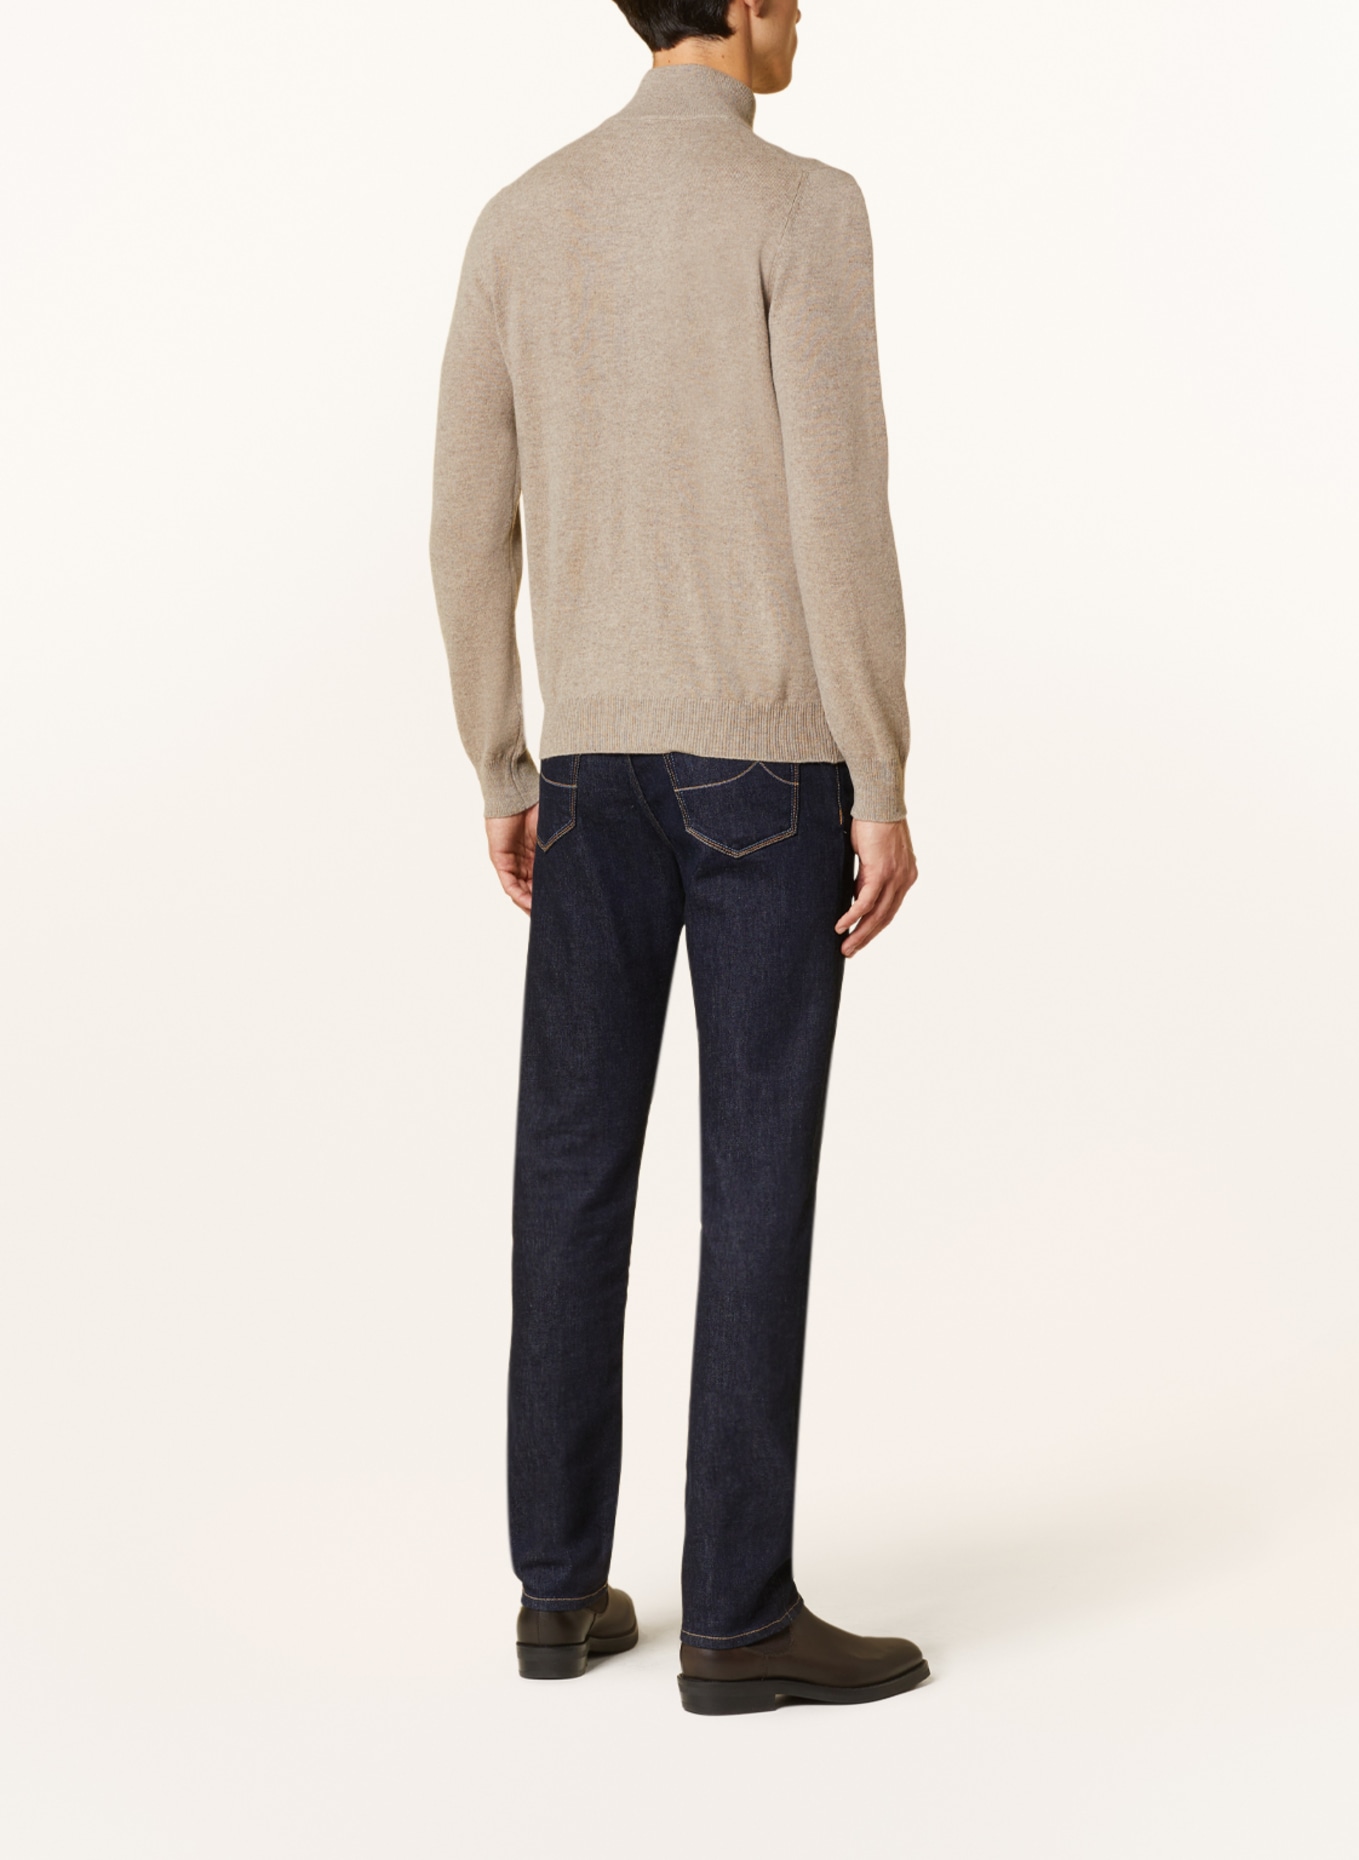 GRAN SASSO Half-zip sweater, Color: BEIGE (Image 3)